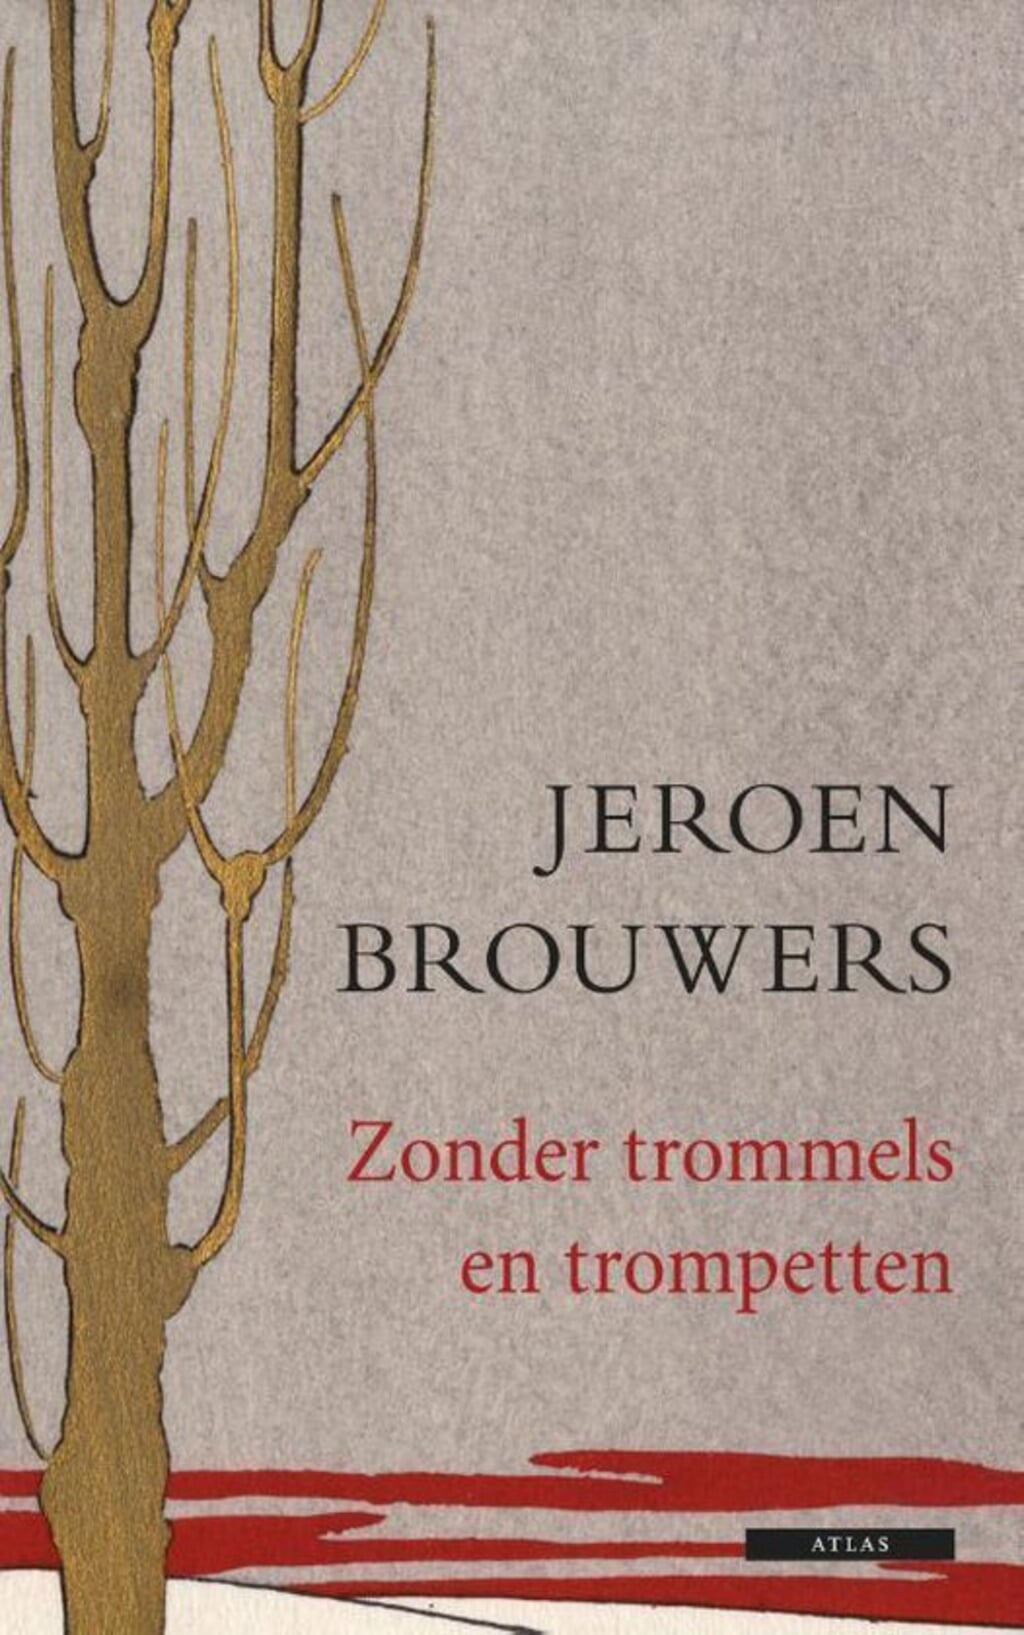 'Zonder trommels en trompetten' van Jeroen Brouwers